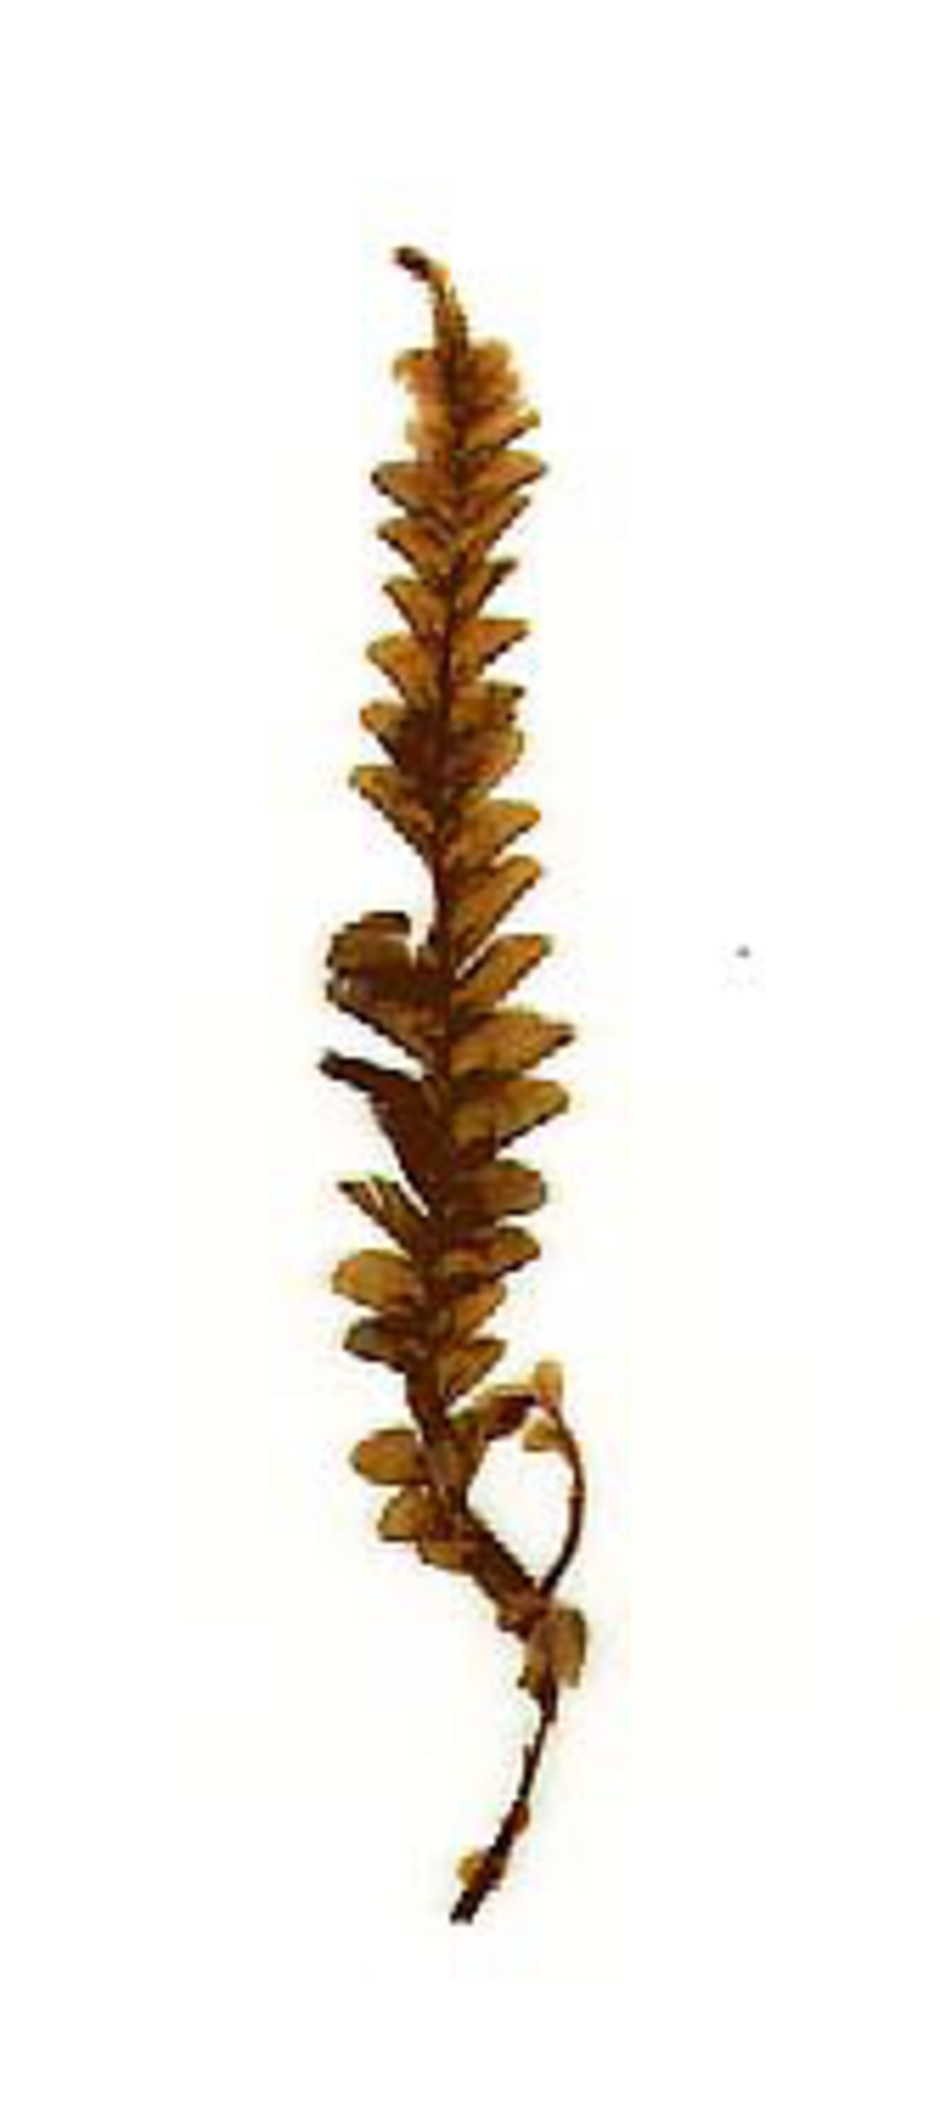 Typmaterial av Plagiochila chonotica Tayl., insamlad av Charles Darwin i Chonos-arkipelagen utanför Chile. Materialet förvaras i Naturhistoriska riksmuseets herbarium.